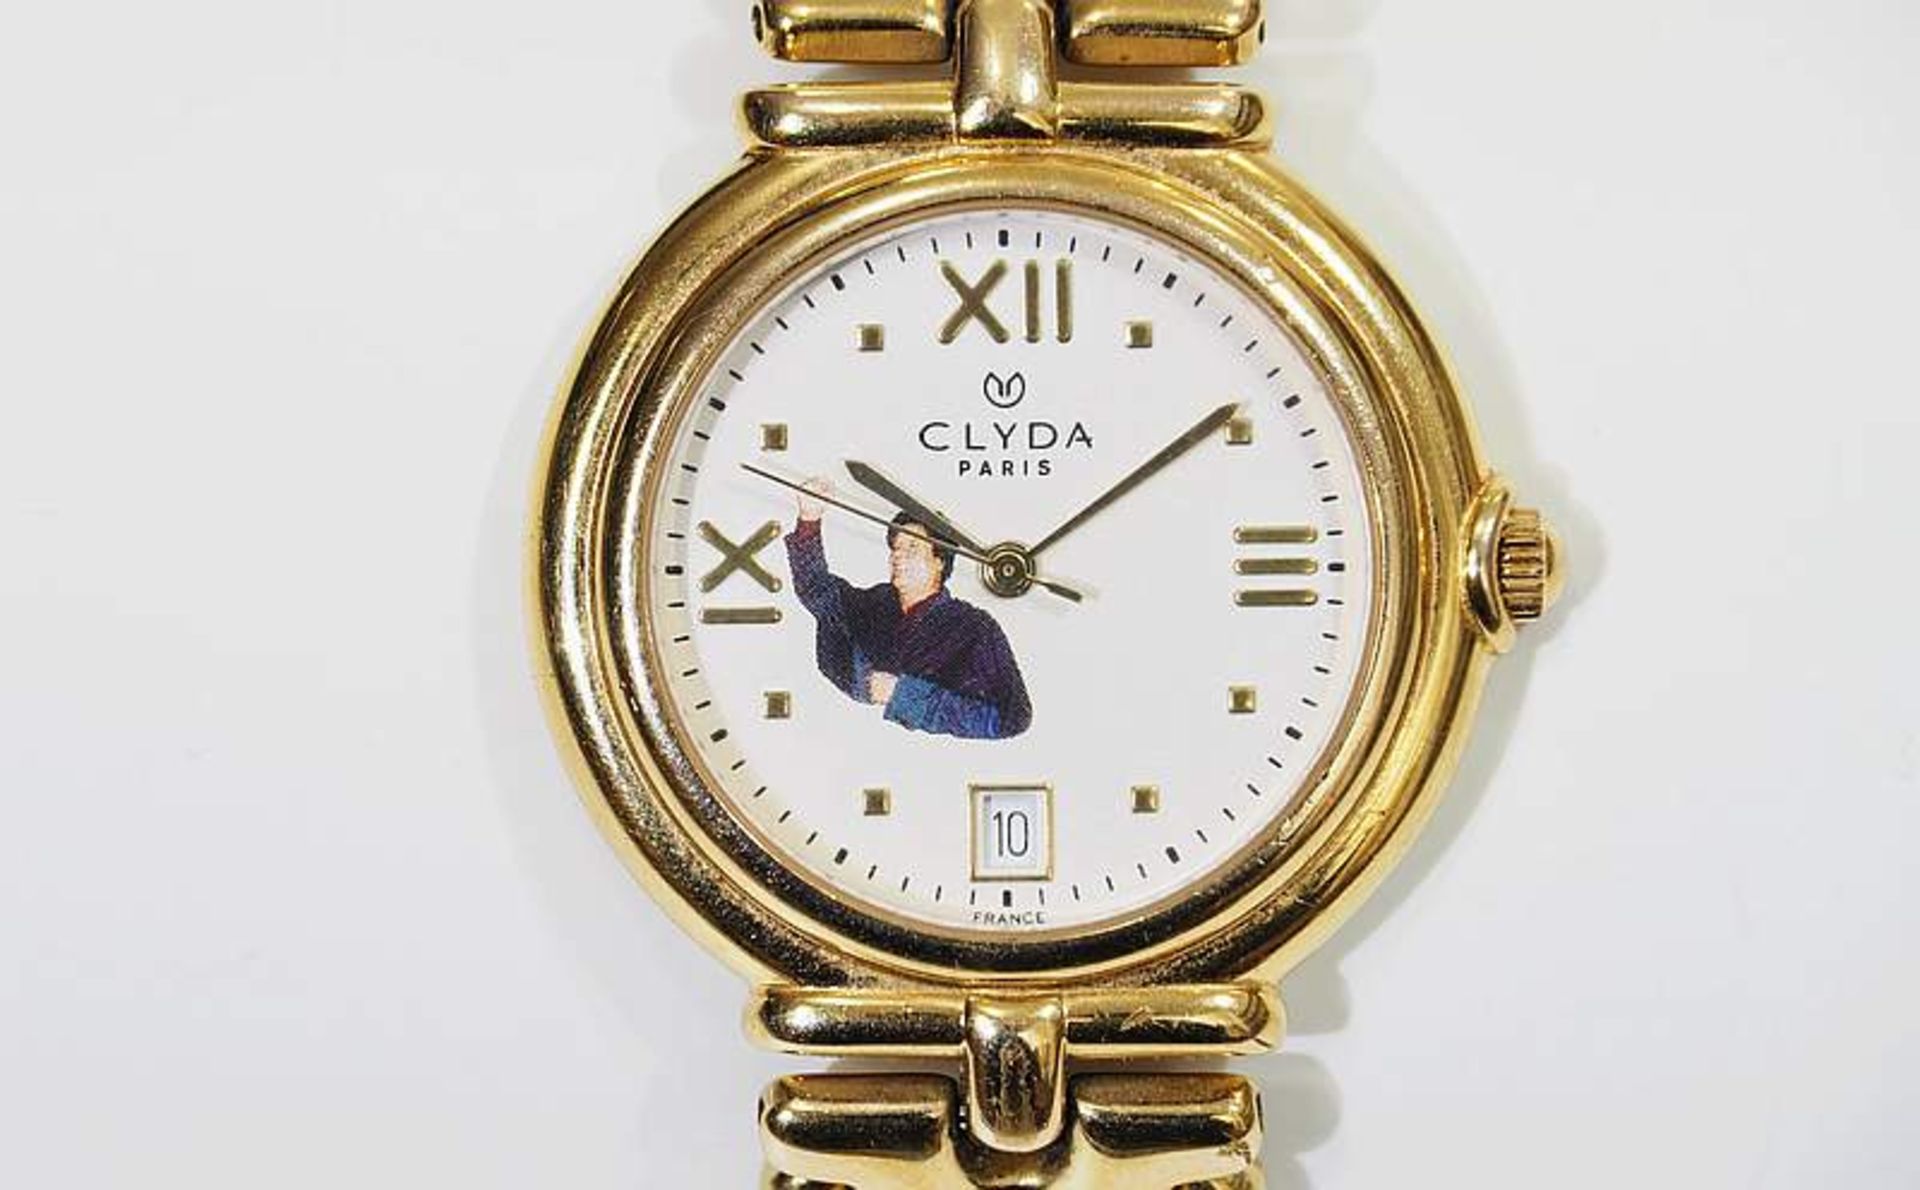 Gaddafi-Uhr. Zifferblatt bezeichnet CLYDA/Paris.Gaddafi-Uhr. Zifferblatt bezeichnet CLYDA/Paris, - Bild 3 aus 10